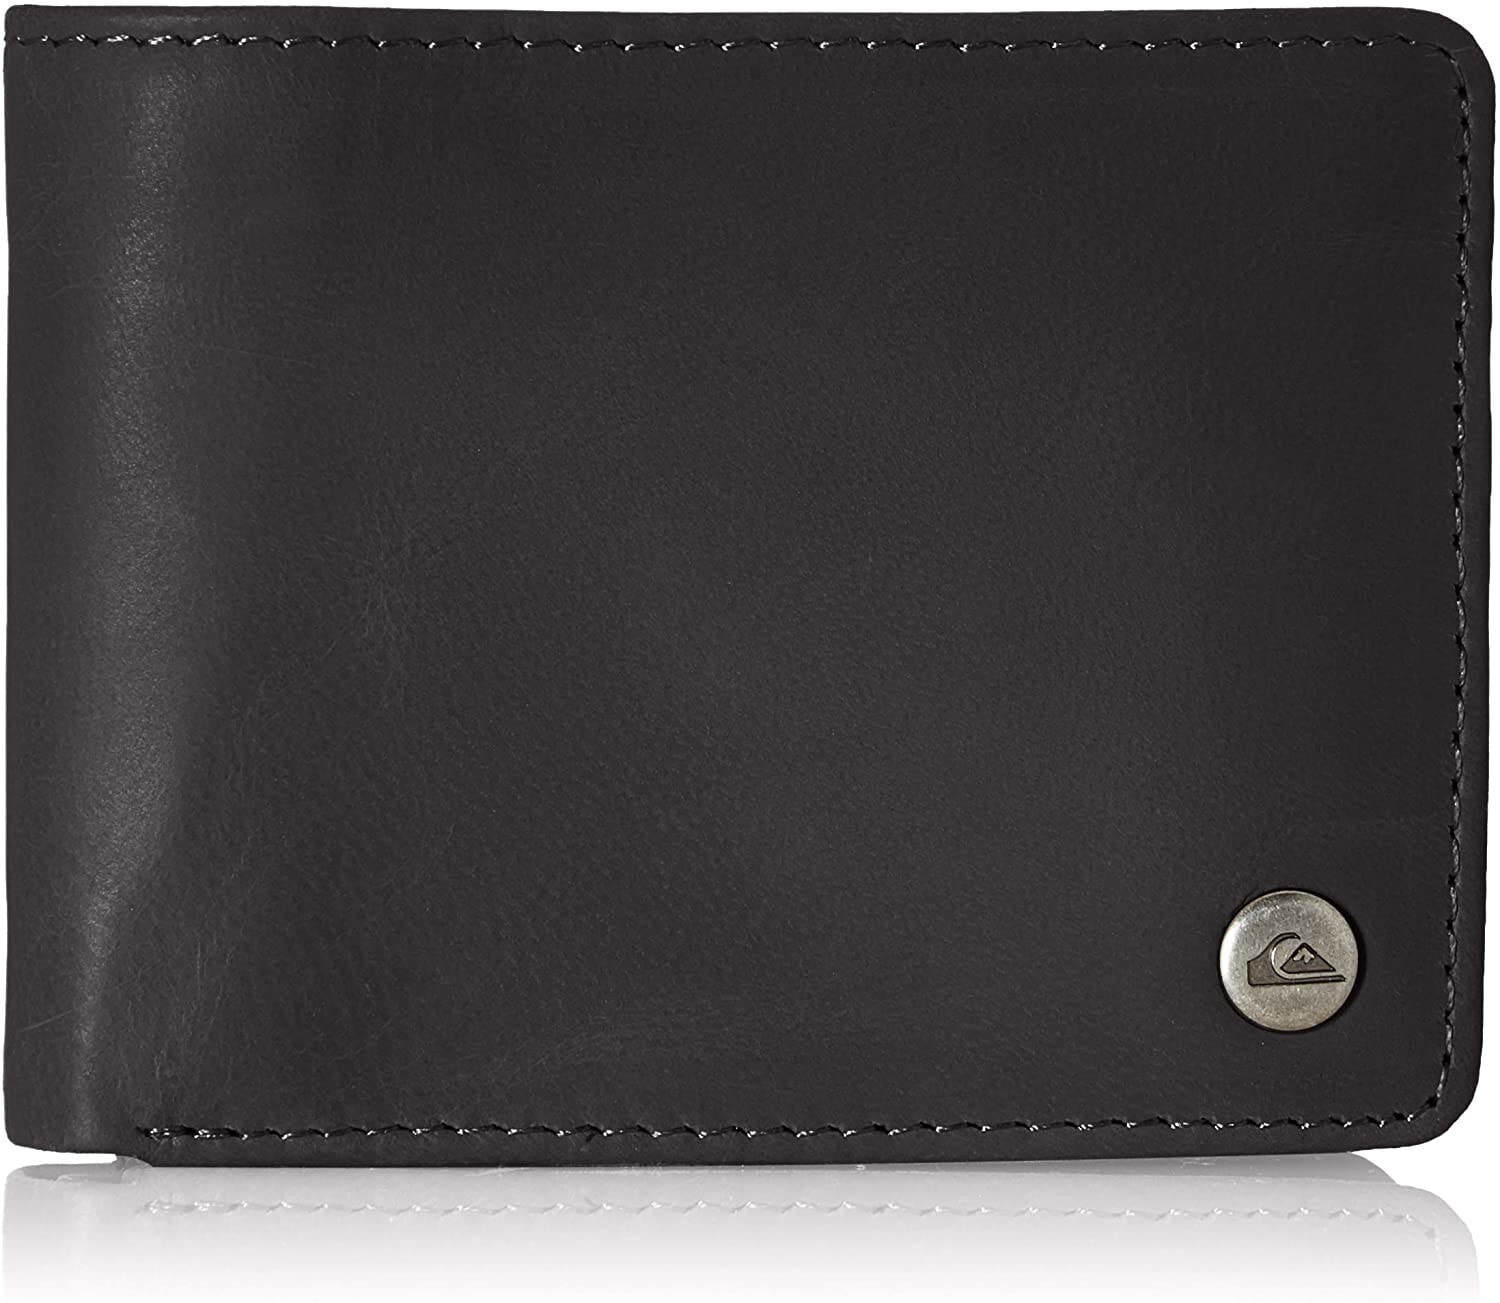 Мужской портмоне кожаный коричневый горизонтальный без застежки Quiksilver Mack 2 Wallet